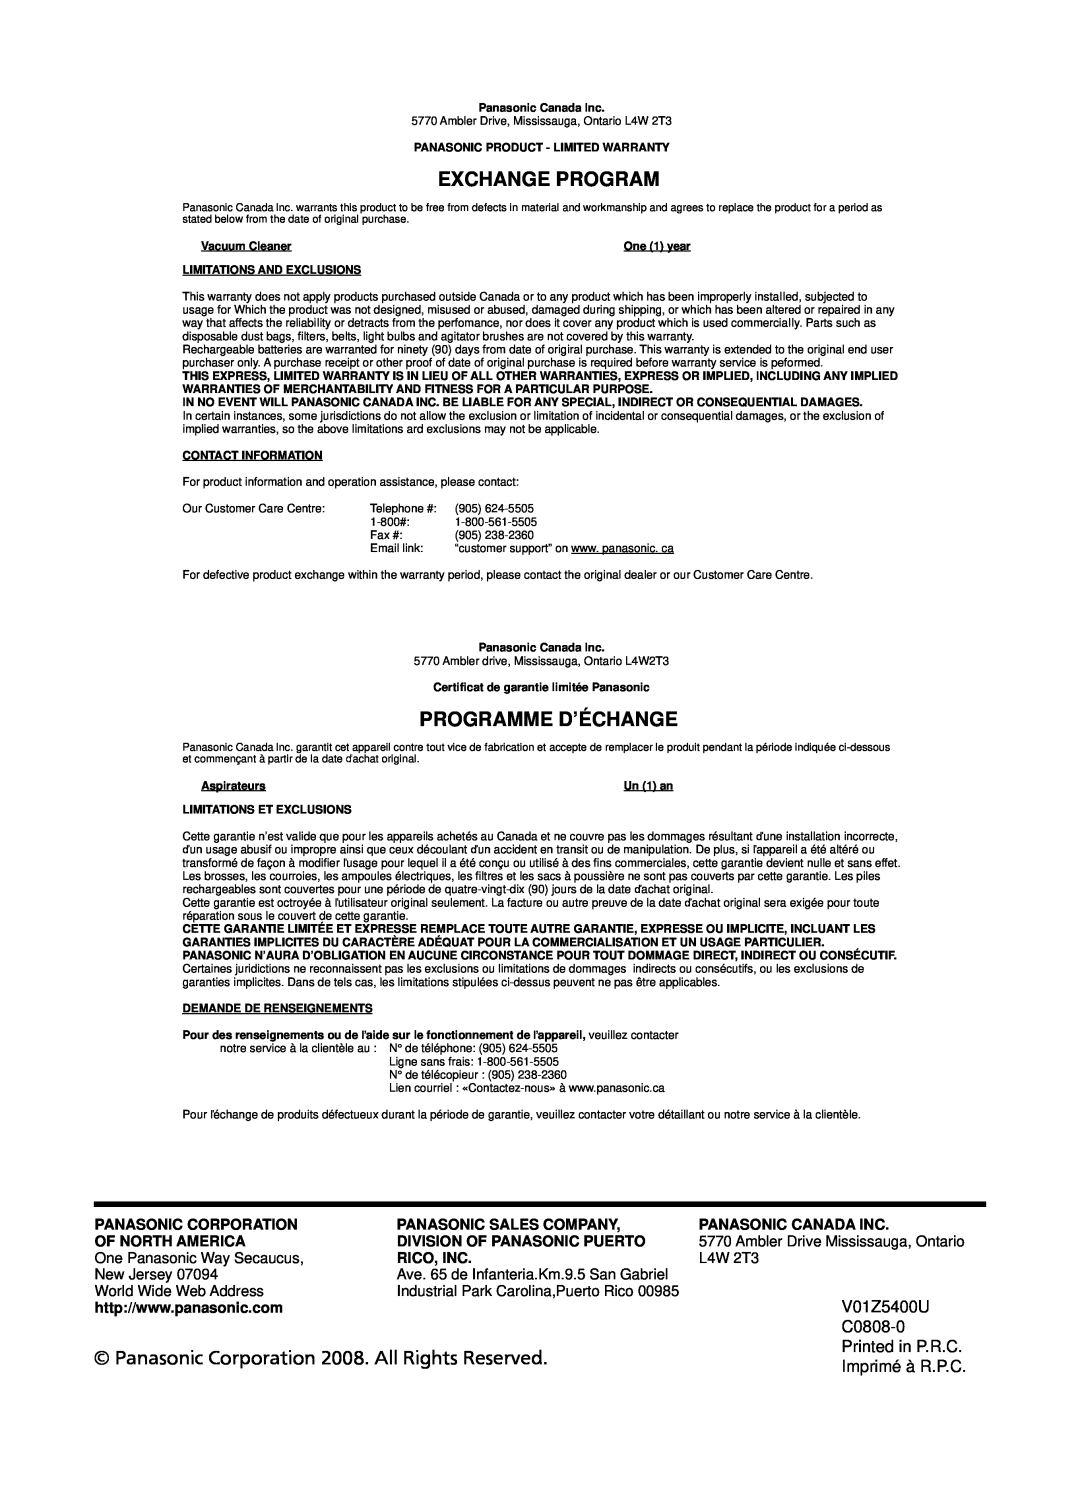 Panasonic Mccg381 Exchange Program, Programme D’Échange, Panasonic Corporation 2008. All Rights Reserved, Imprimé à R.P.C 